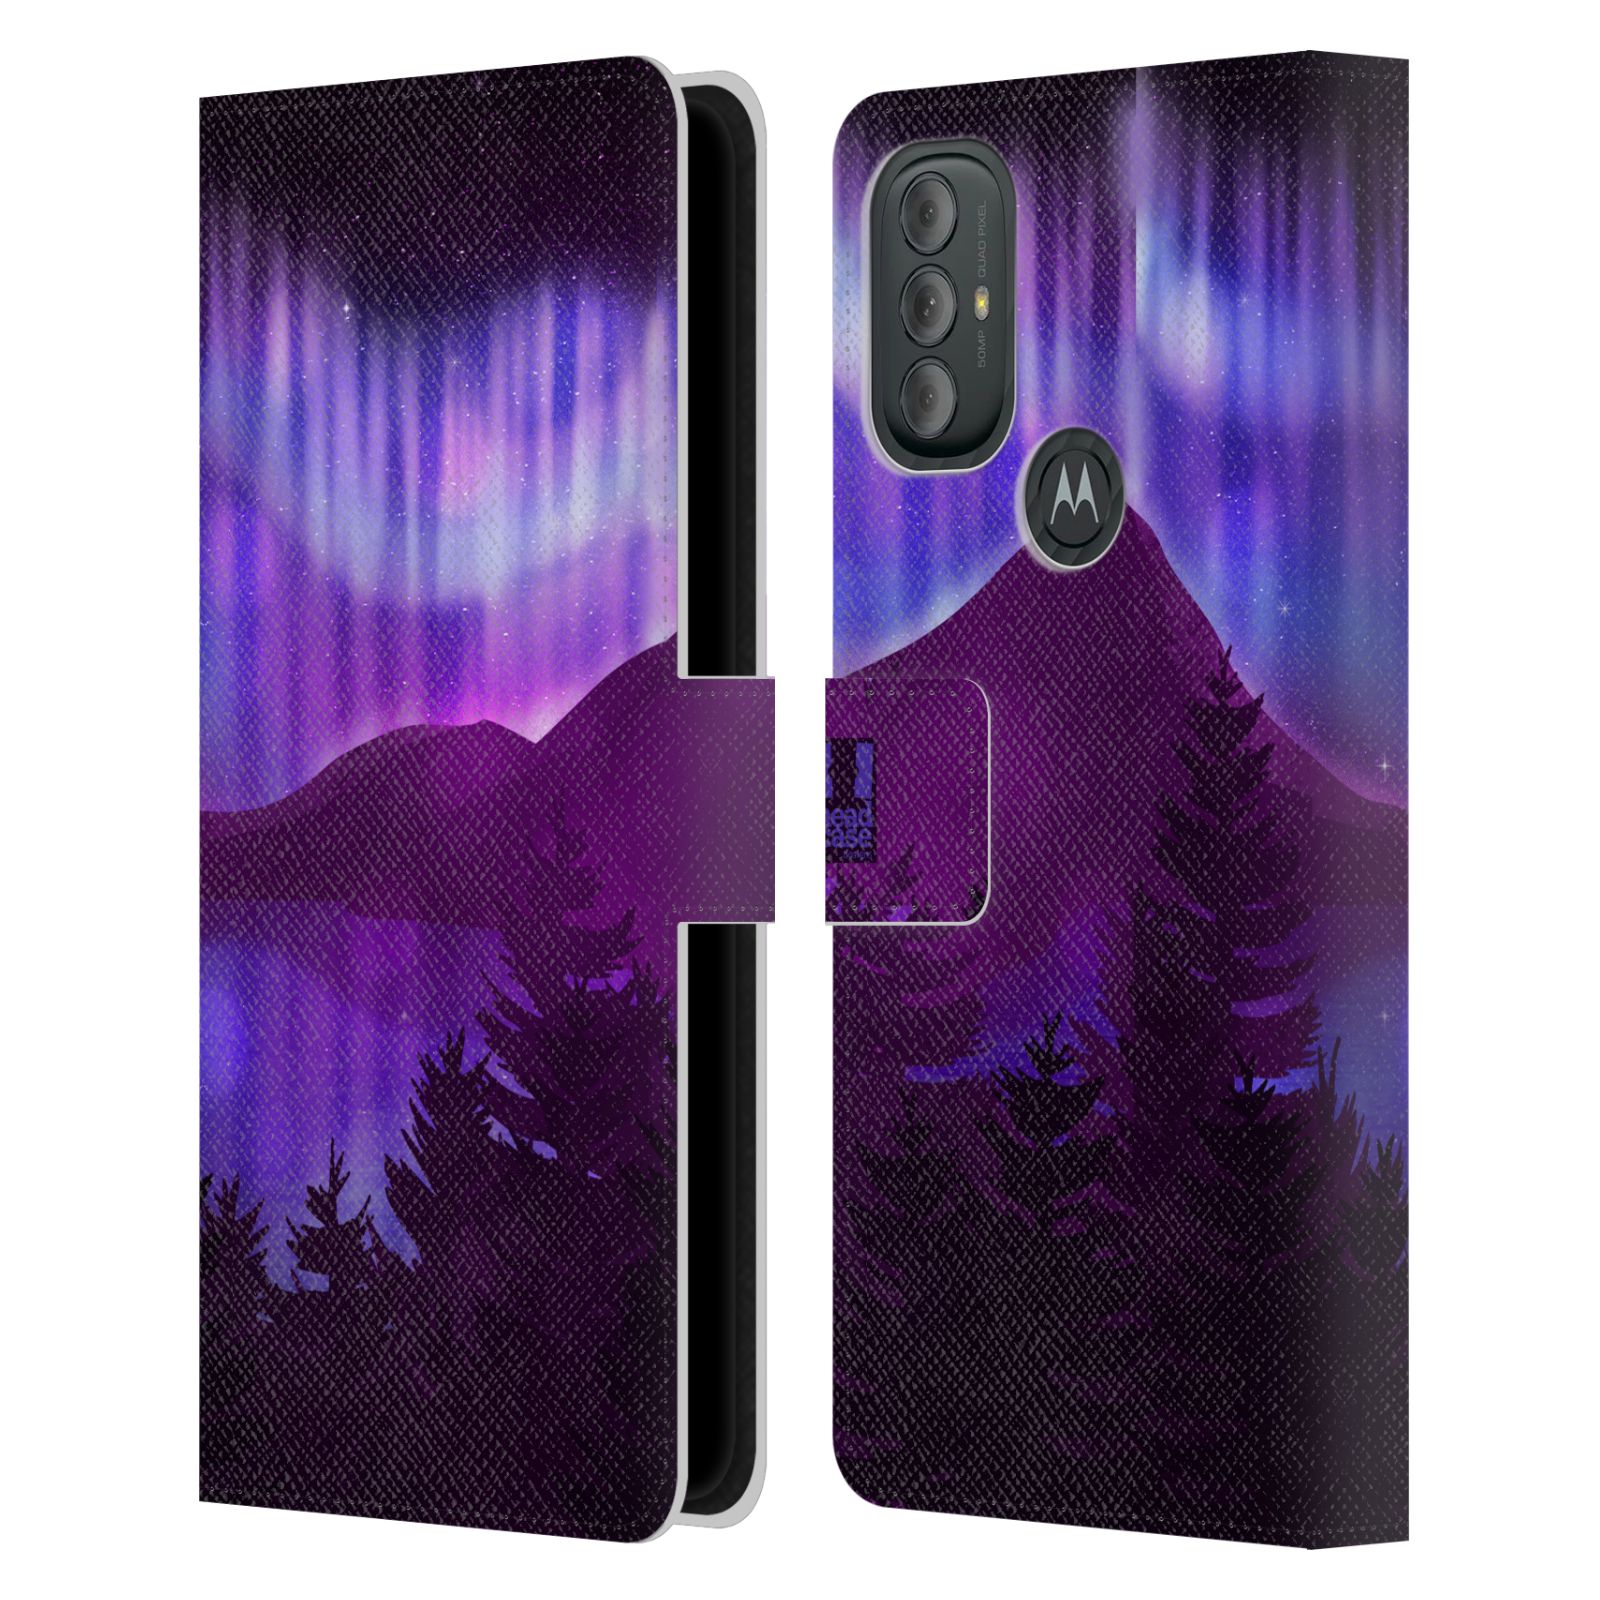 Pouzdro na mobil Motorola Moto G10 / G30 - HEAD CASE - Hory a lesy fialový odstín